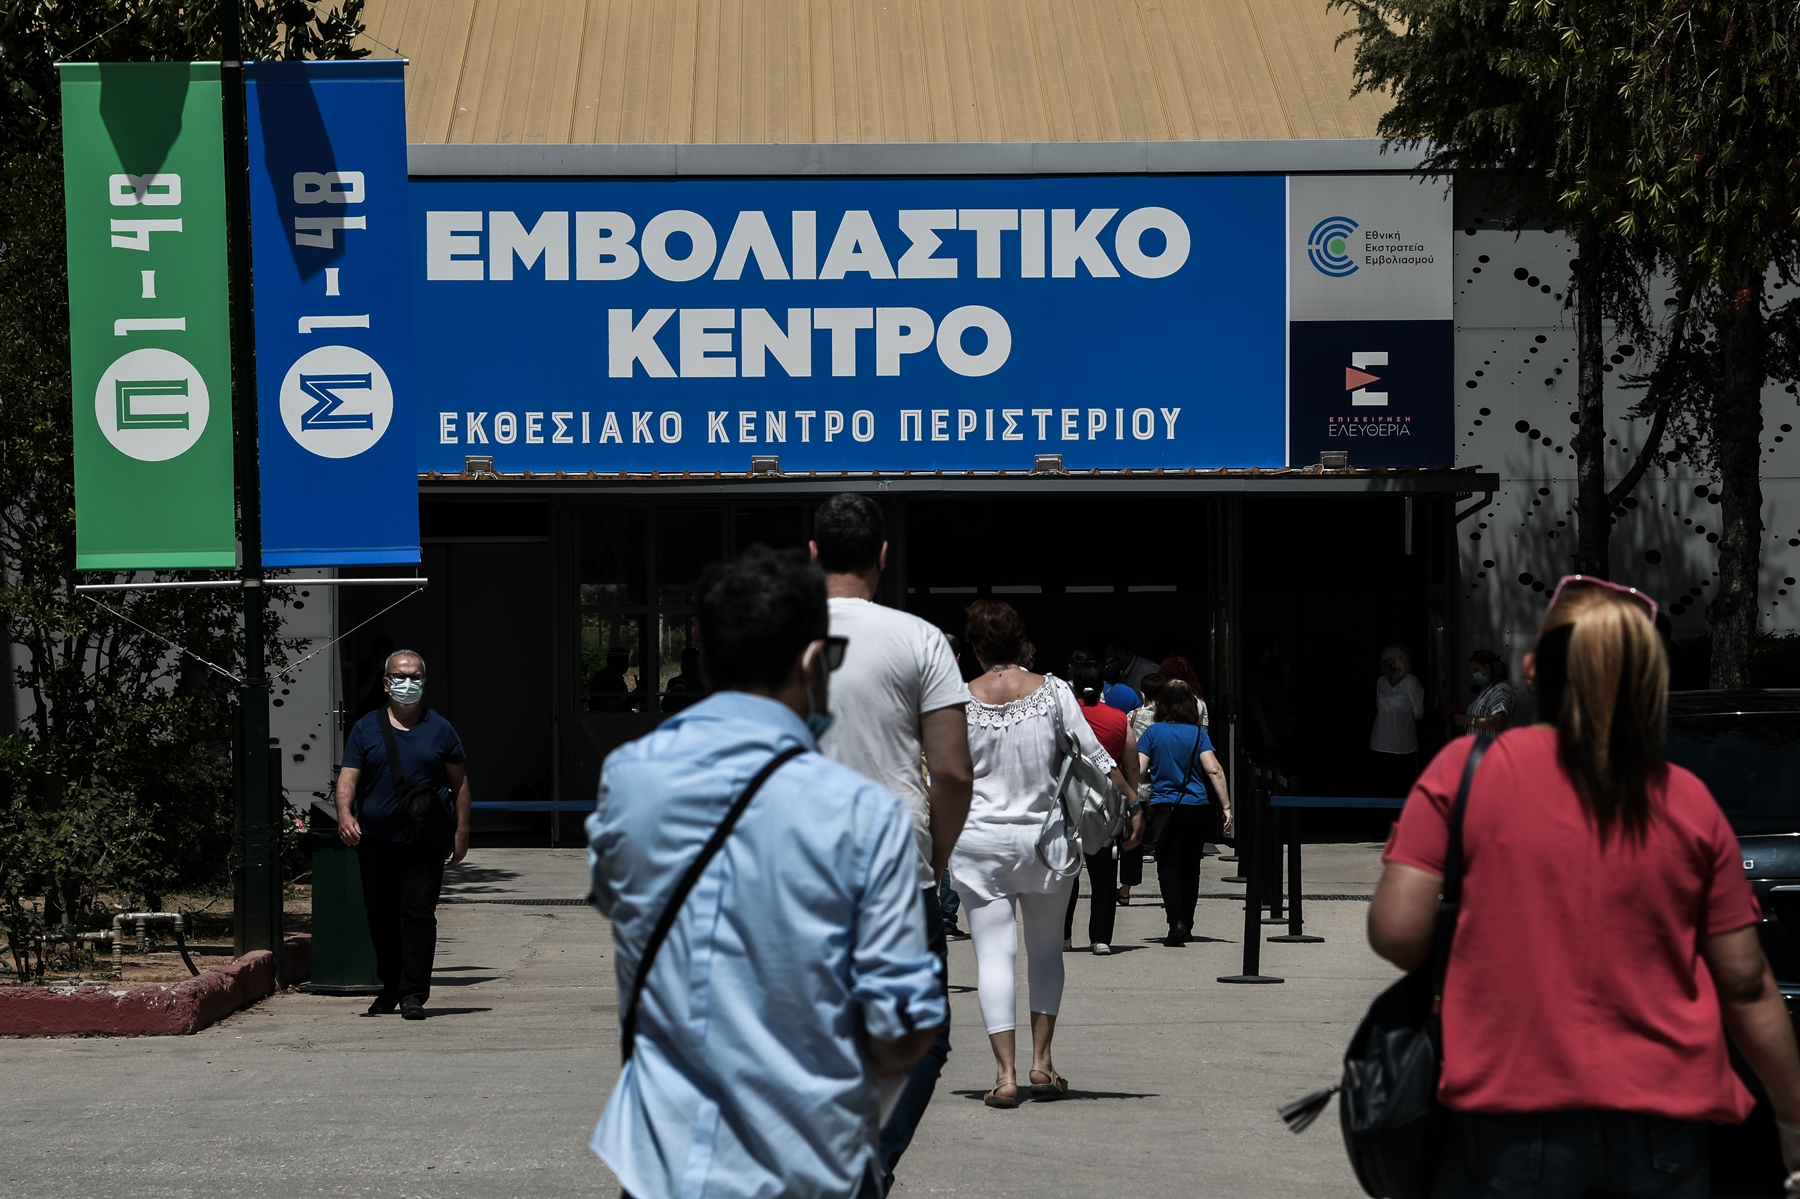 Πότε θα μειωθούν οι θάνατοι – Ελλάδα: Τι είπε ο Σαρηγιάννης